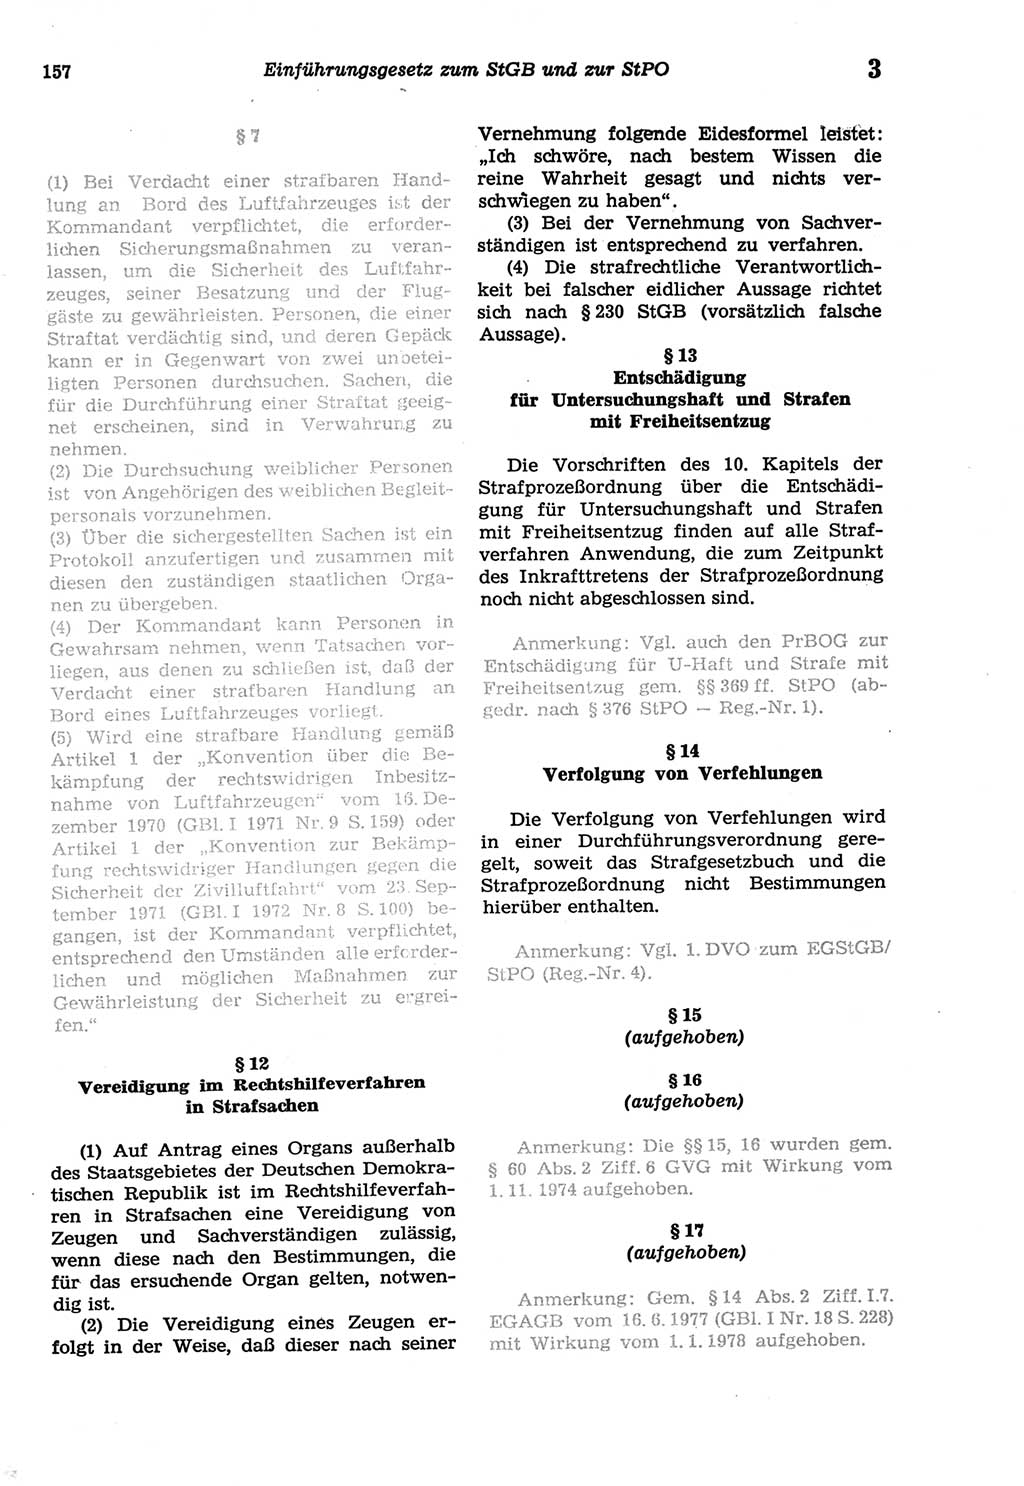 Strafprozeßordnung (StPO) der Deutschen Demokratischen Republik (DDR) sowie angrenzende Gesetze und Bestimmungen 1977, Seite 157 (StPO DDR Ges. Best. 1977, S. 157)